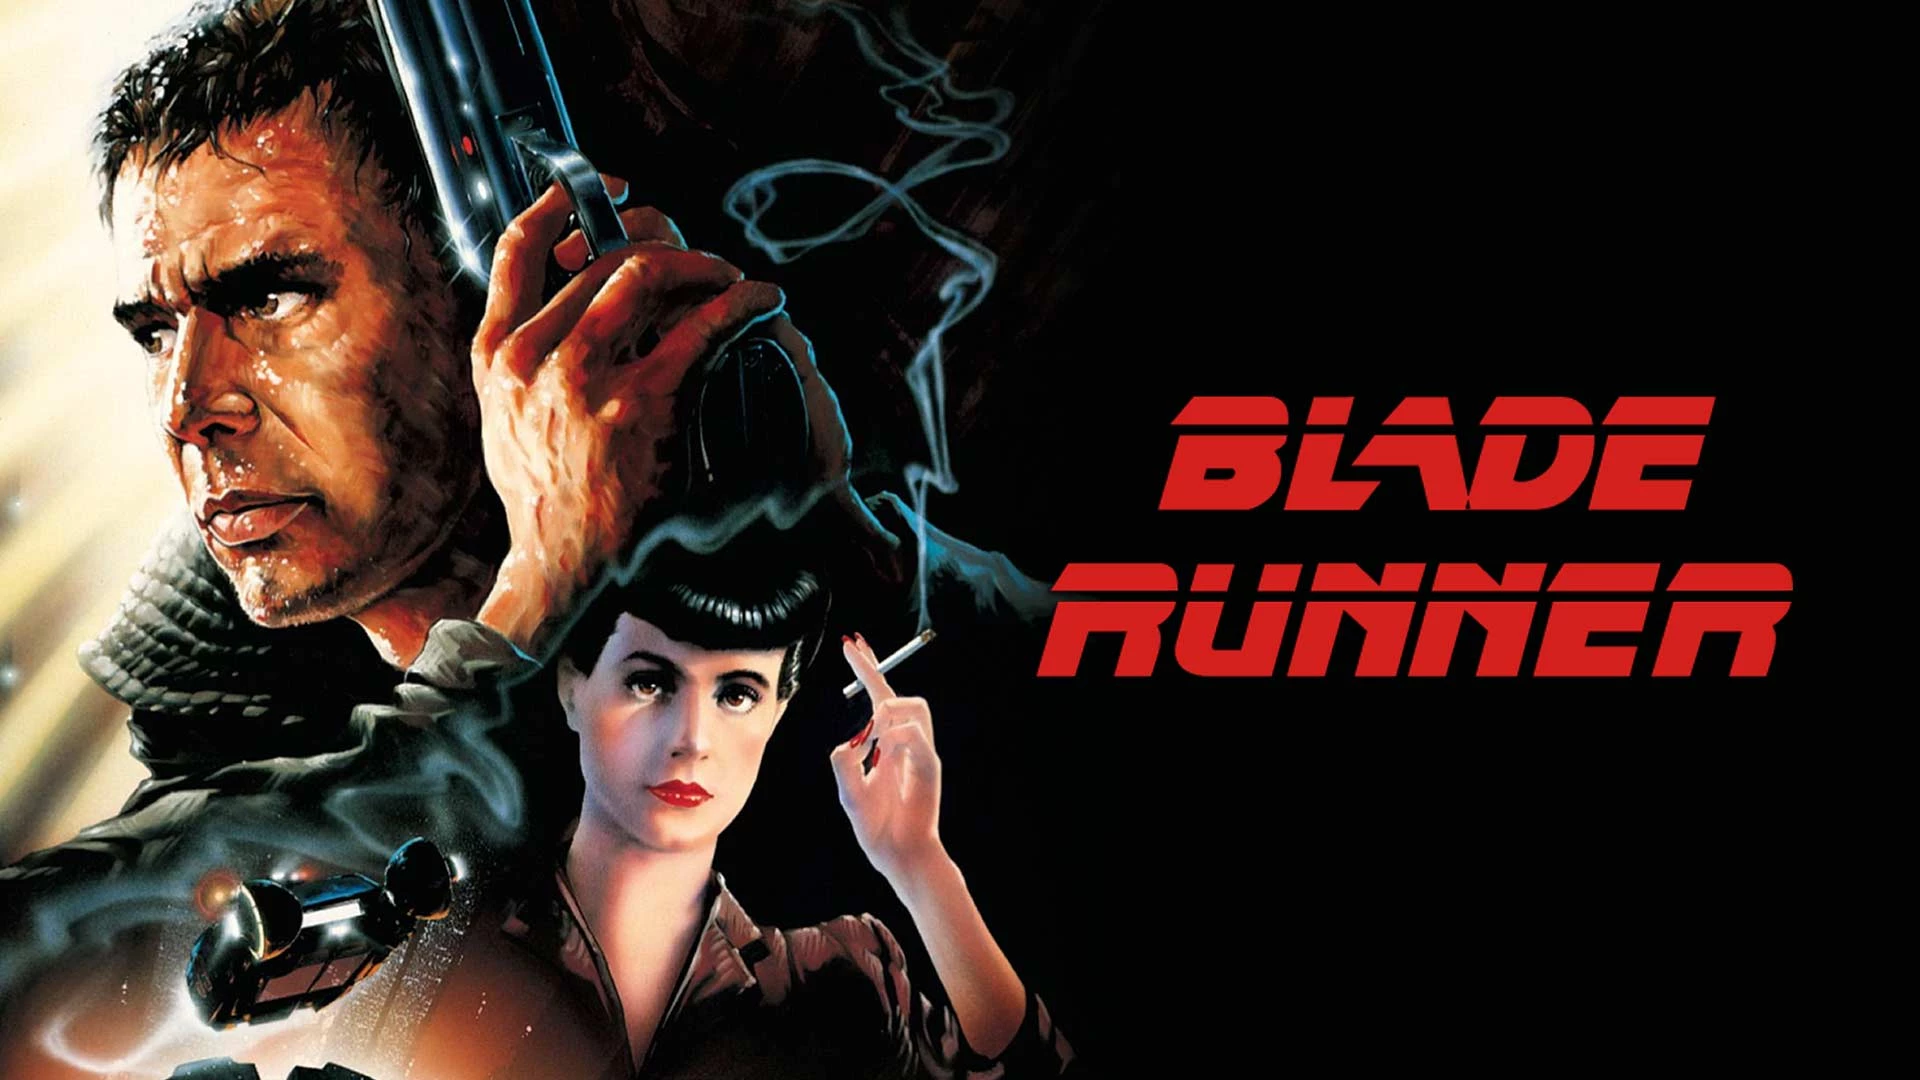 Movies like Blade Runner